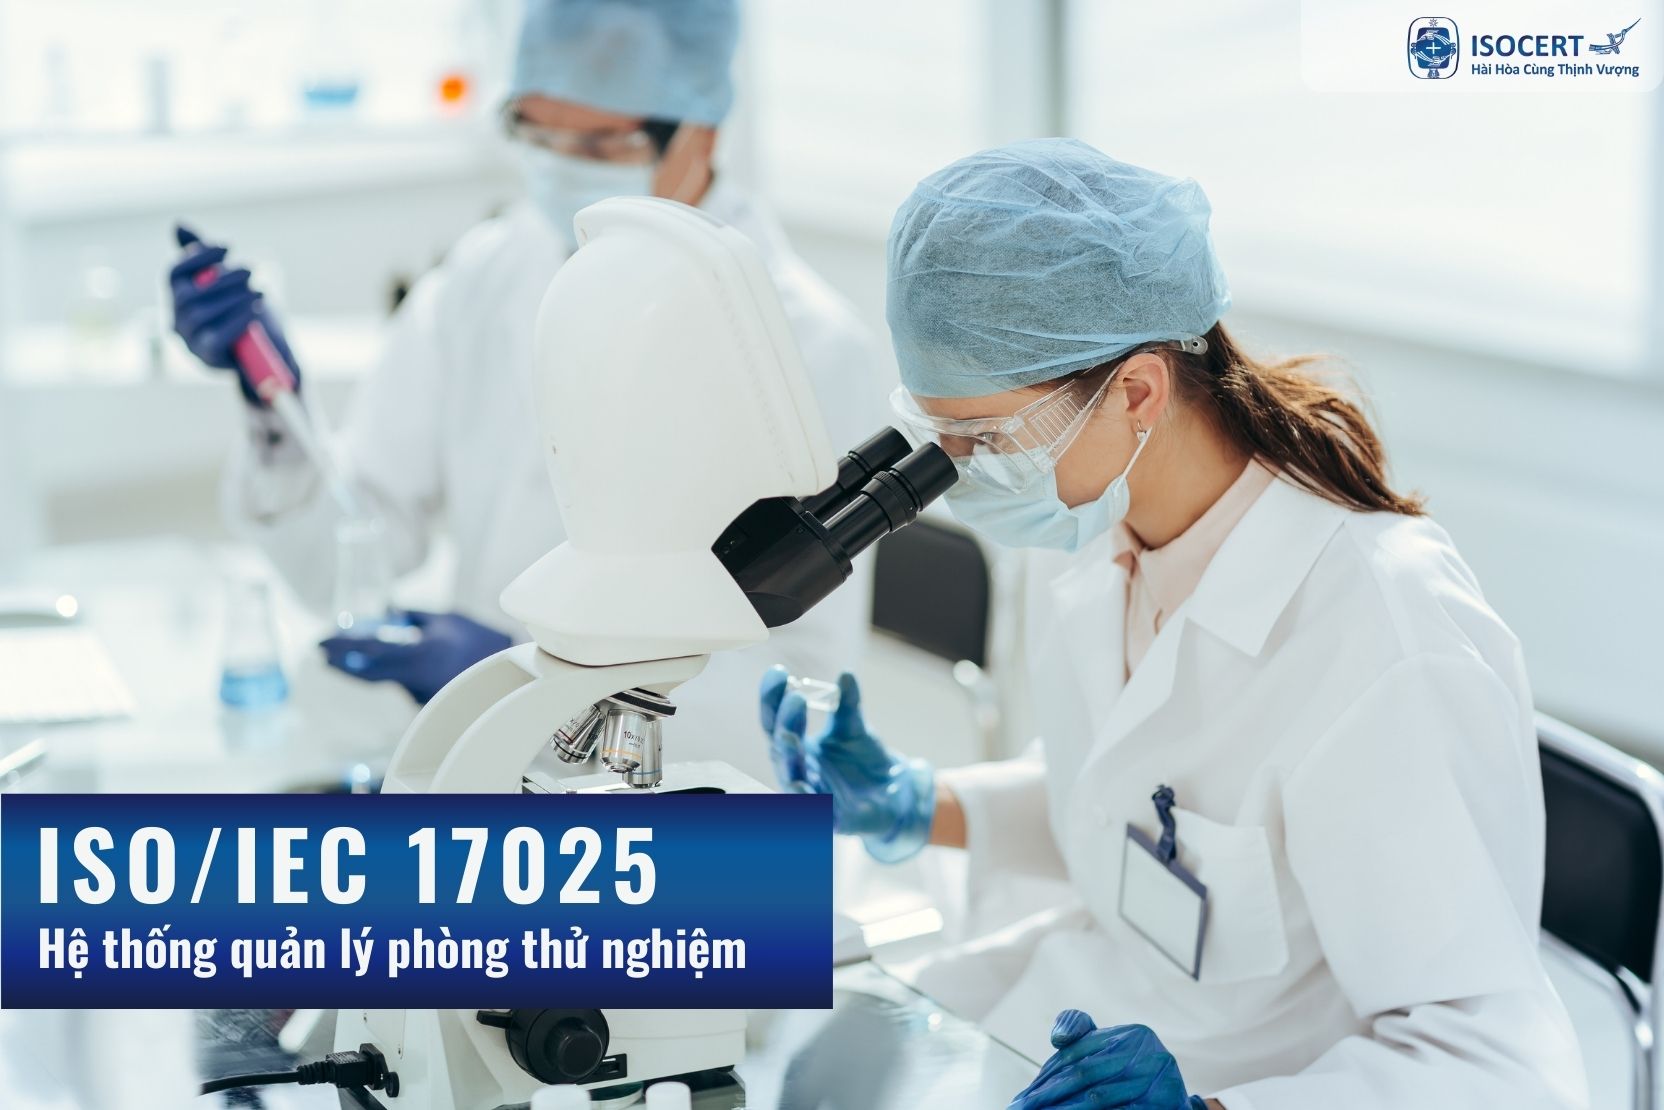 Tư vấn công nhận ISO/IEC 17025: Hệ thống quản lý phòng thử nghiệm